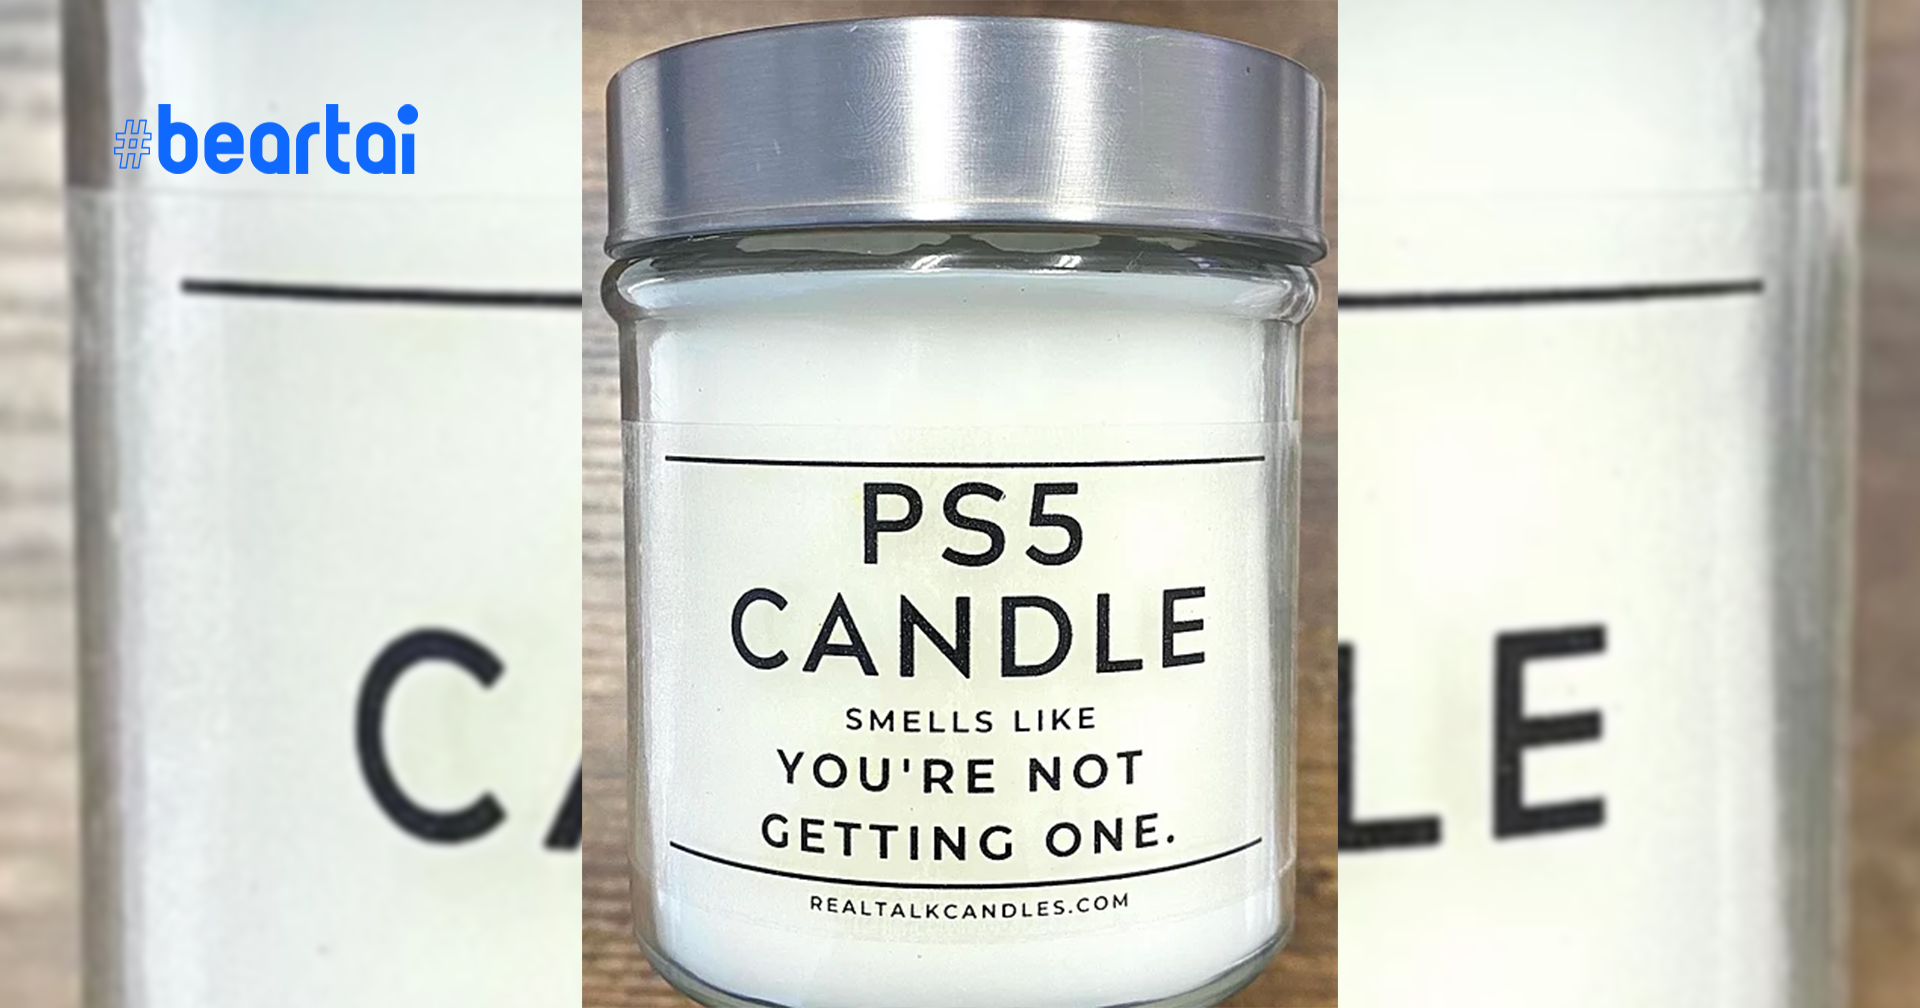 สนไหม? เทียนหอมกลิ่น PS5 จงสูดดม เพราะคุณไม่มีเครื่องไว้ในครอบครอง!